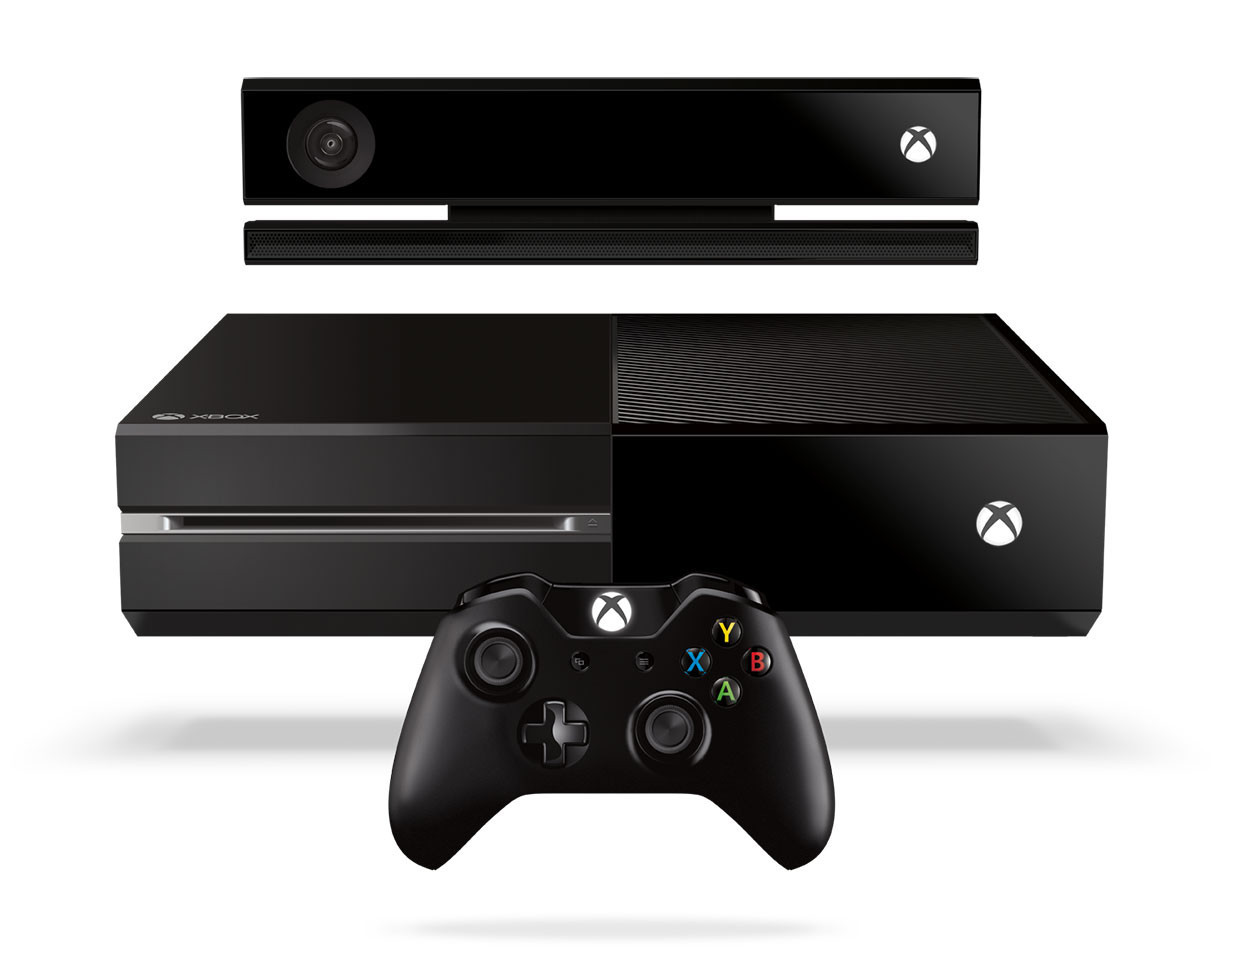 Entretiens Xbox One - Billou rédacteur chez Xboxygen